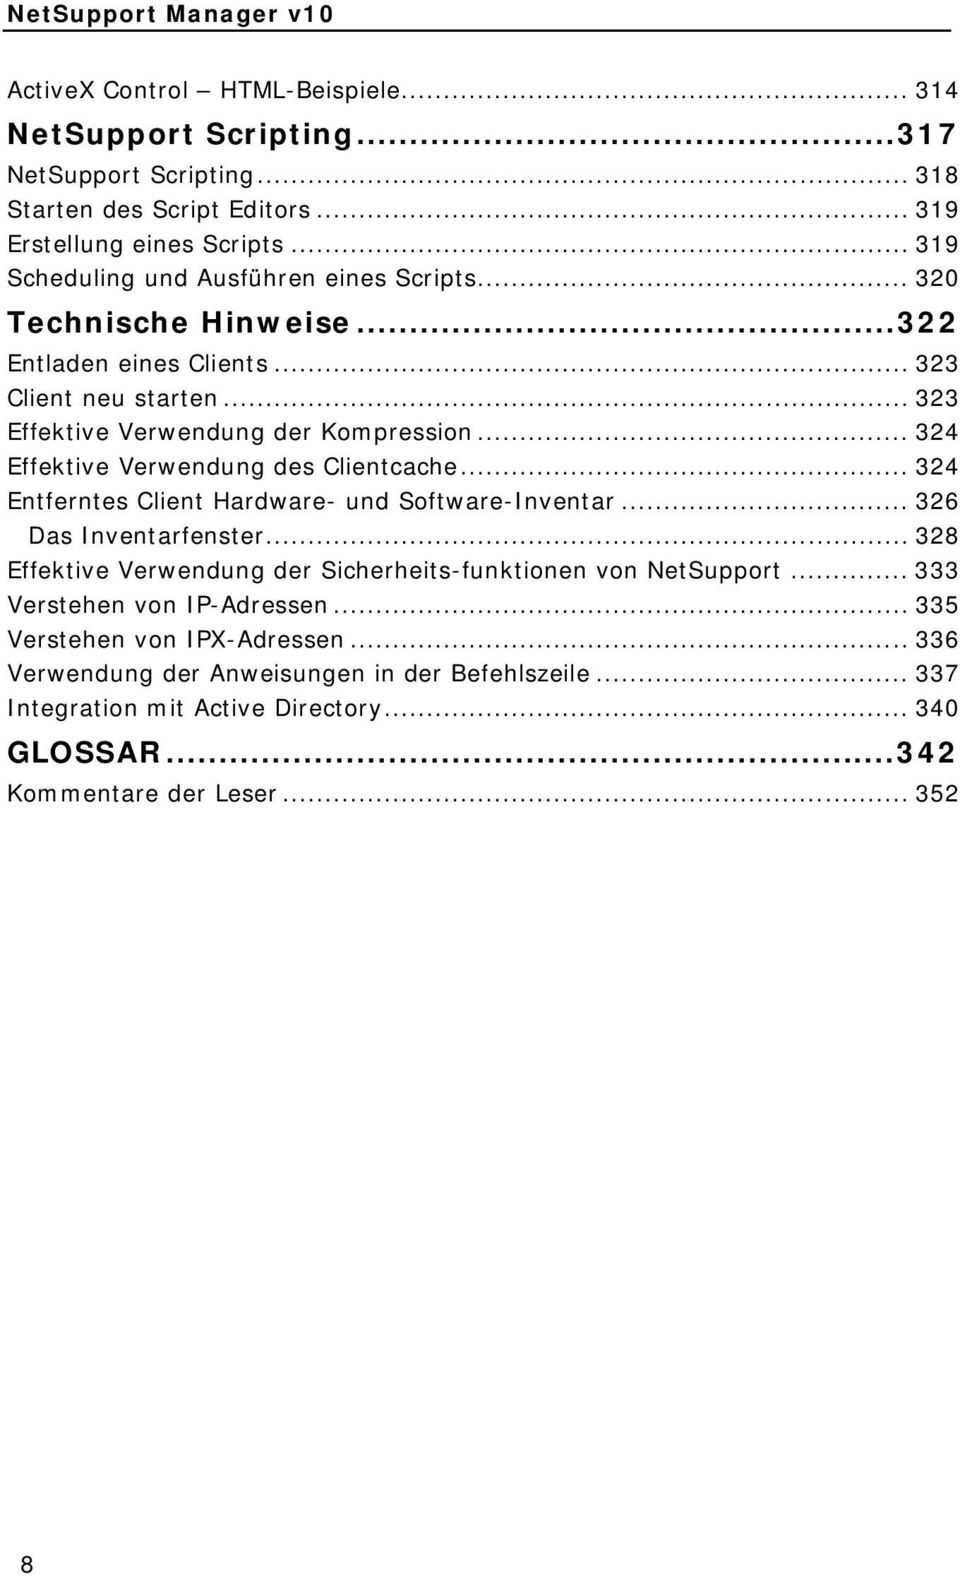 .. 324 Effektive Verwendung des Clientcache... 324 Entferntes Client Hardware- und Software-Inventar... 326 Das Inventarfenster.